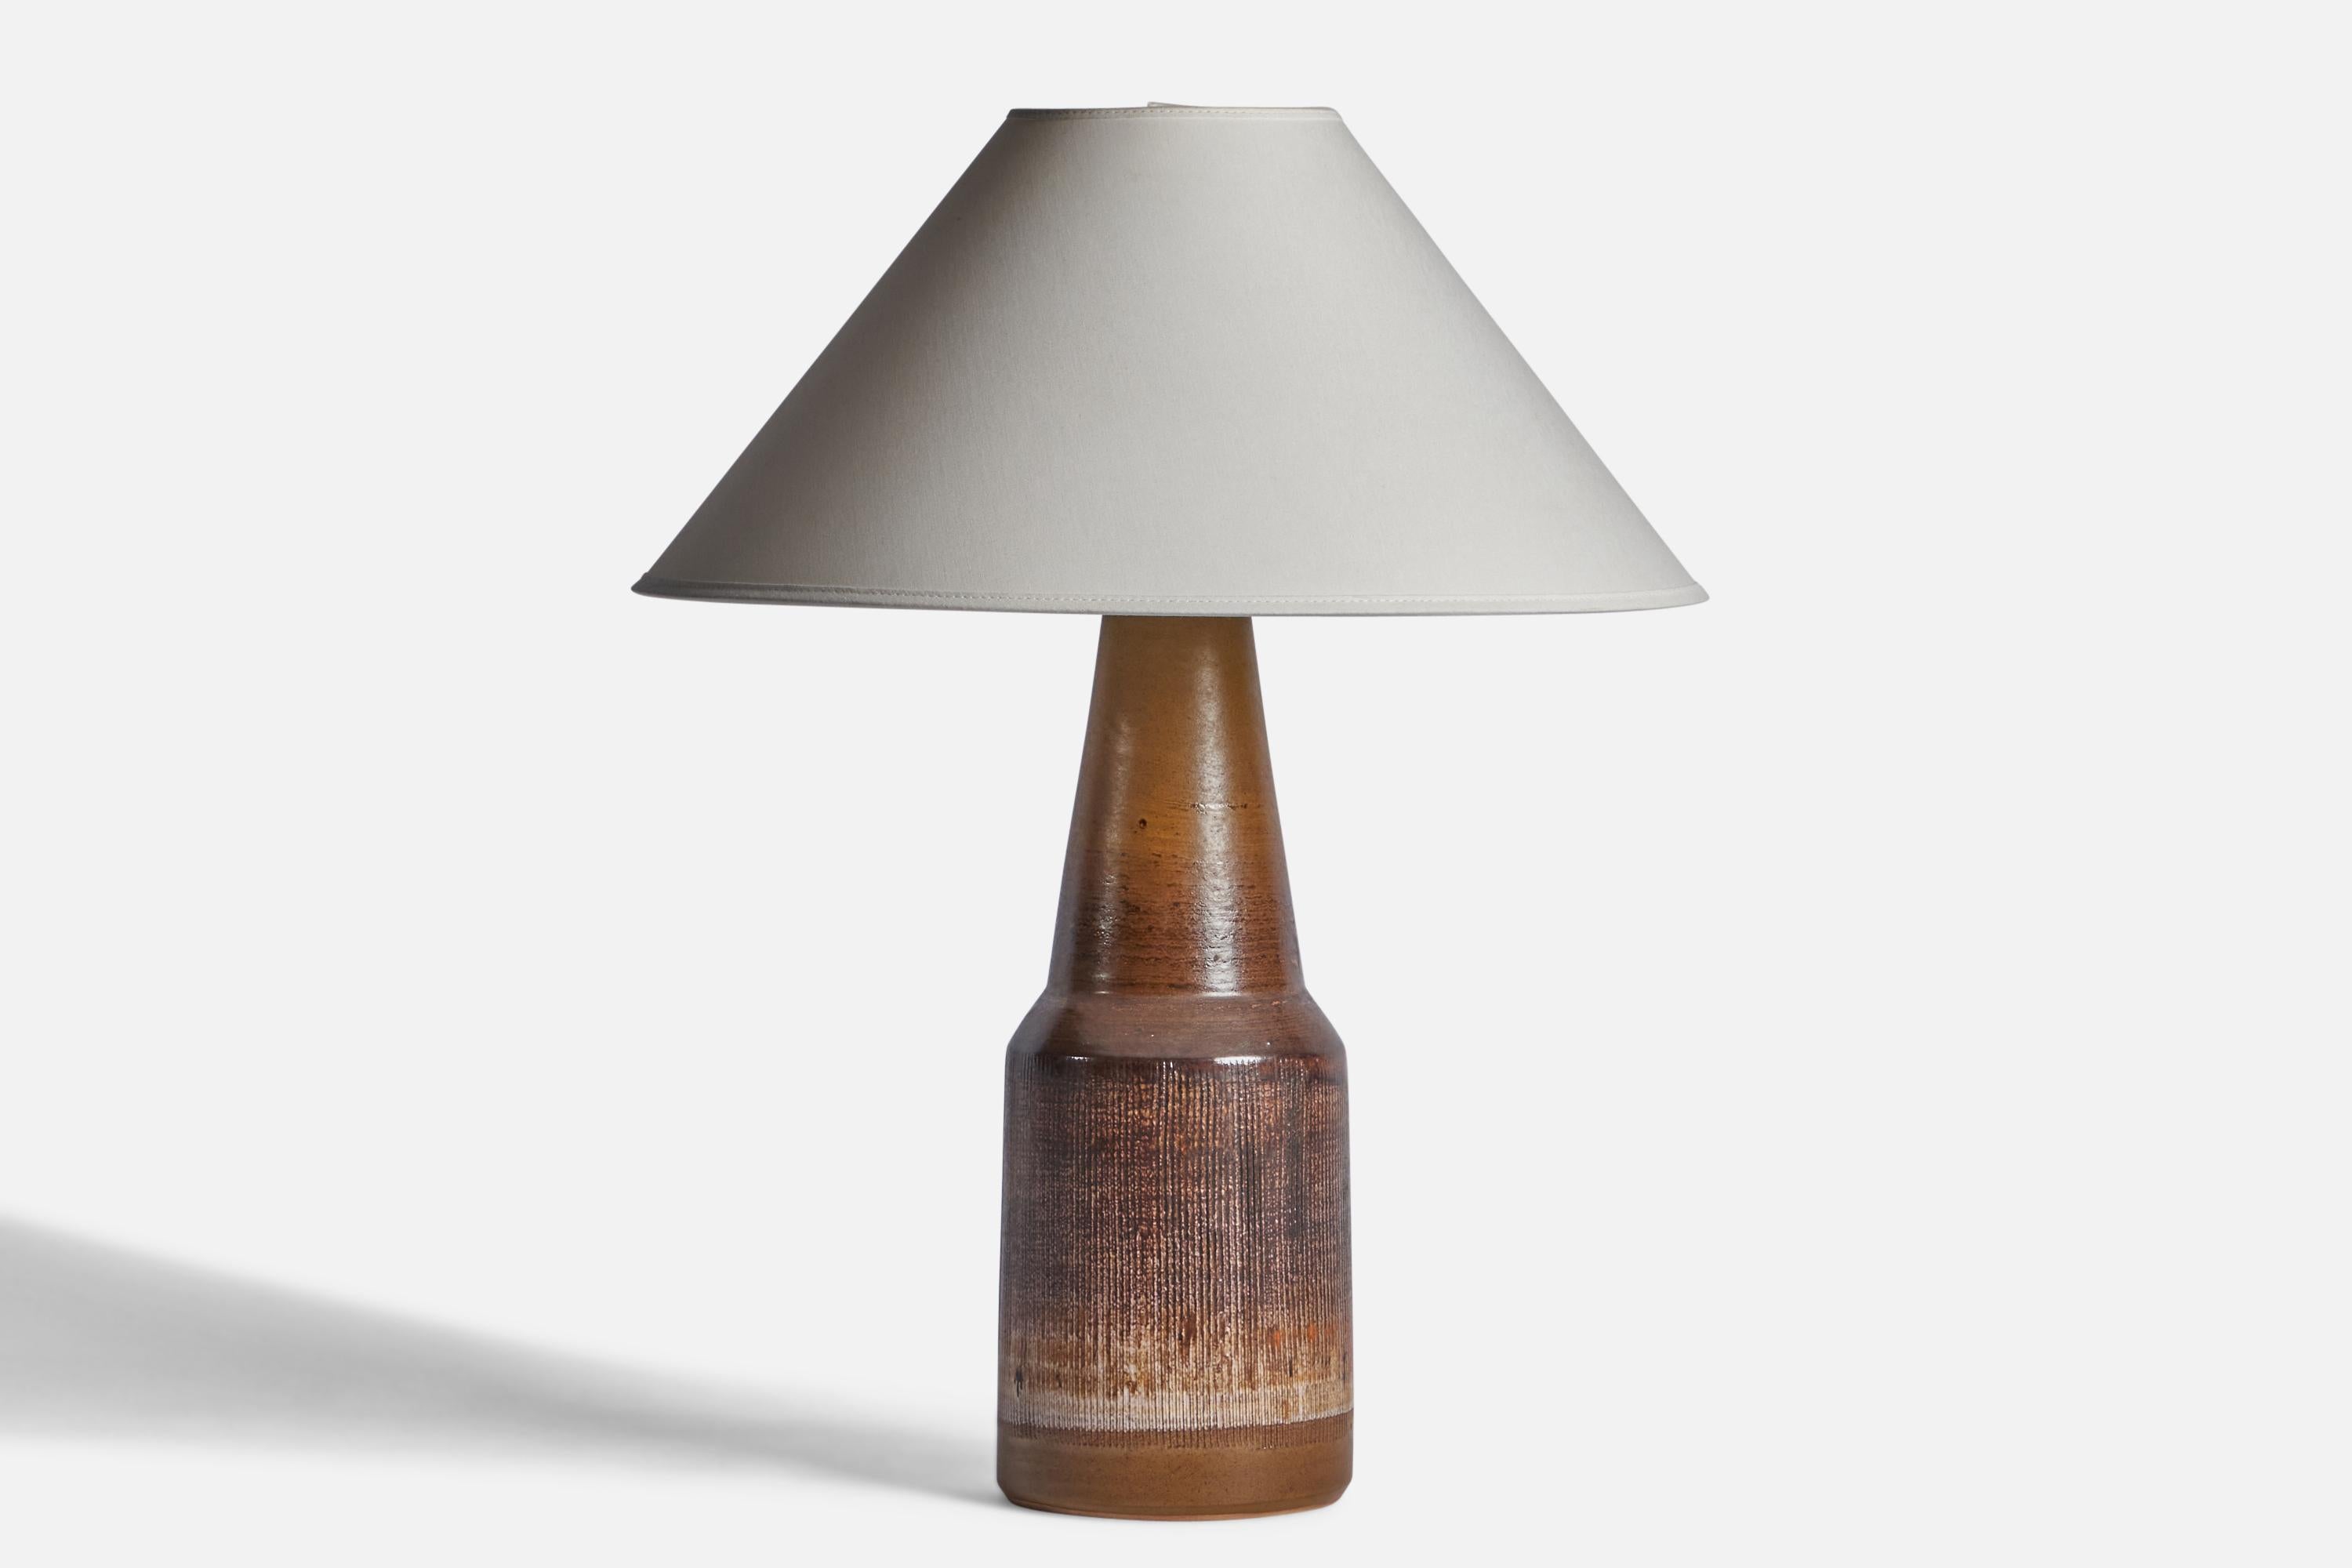 Tischlampe aus braun glasiertem Steingut, entworfen und hergestellt von Tilgmans Keramik, Schweden, 1960er Jahre.

Abmessungen der Lampe (Zoll): 16,5